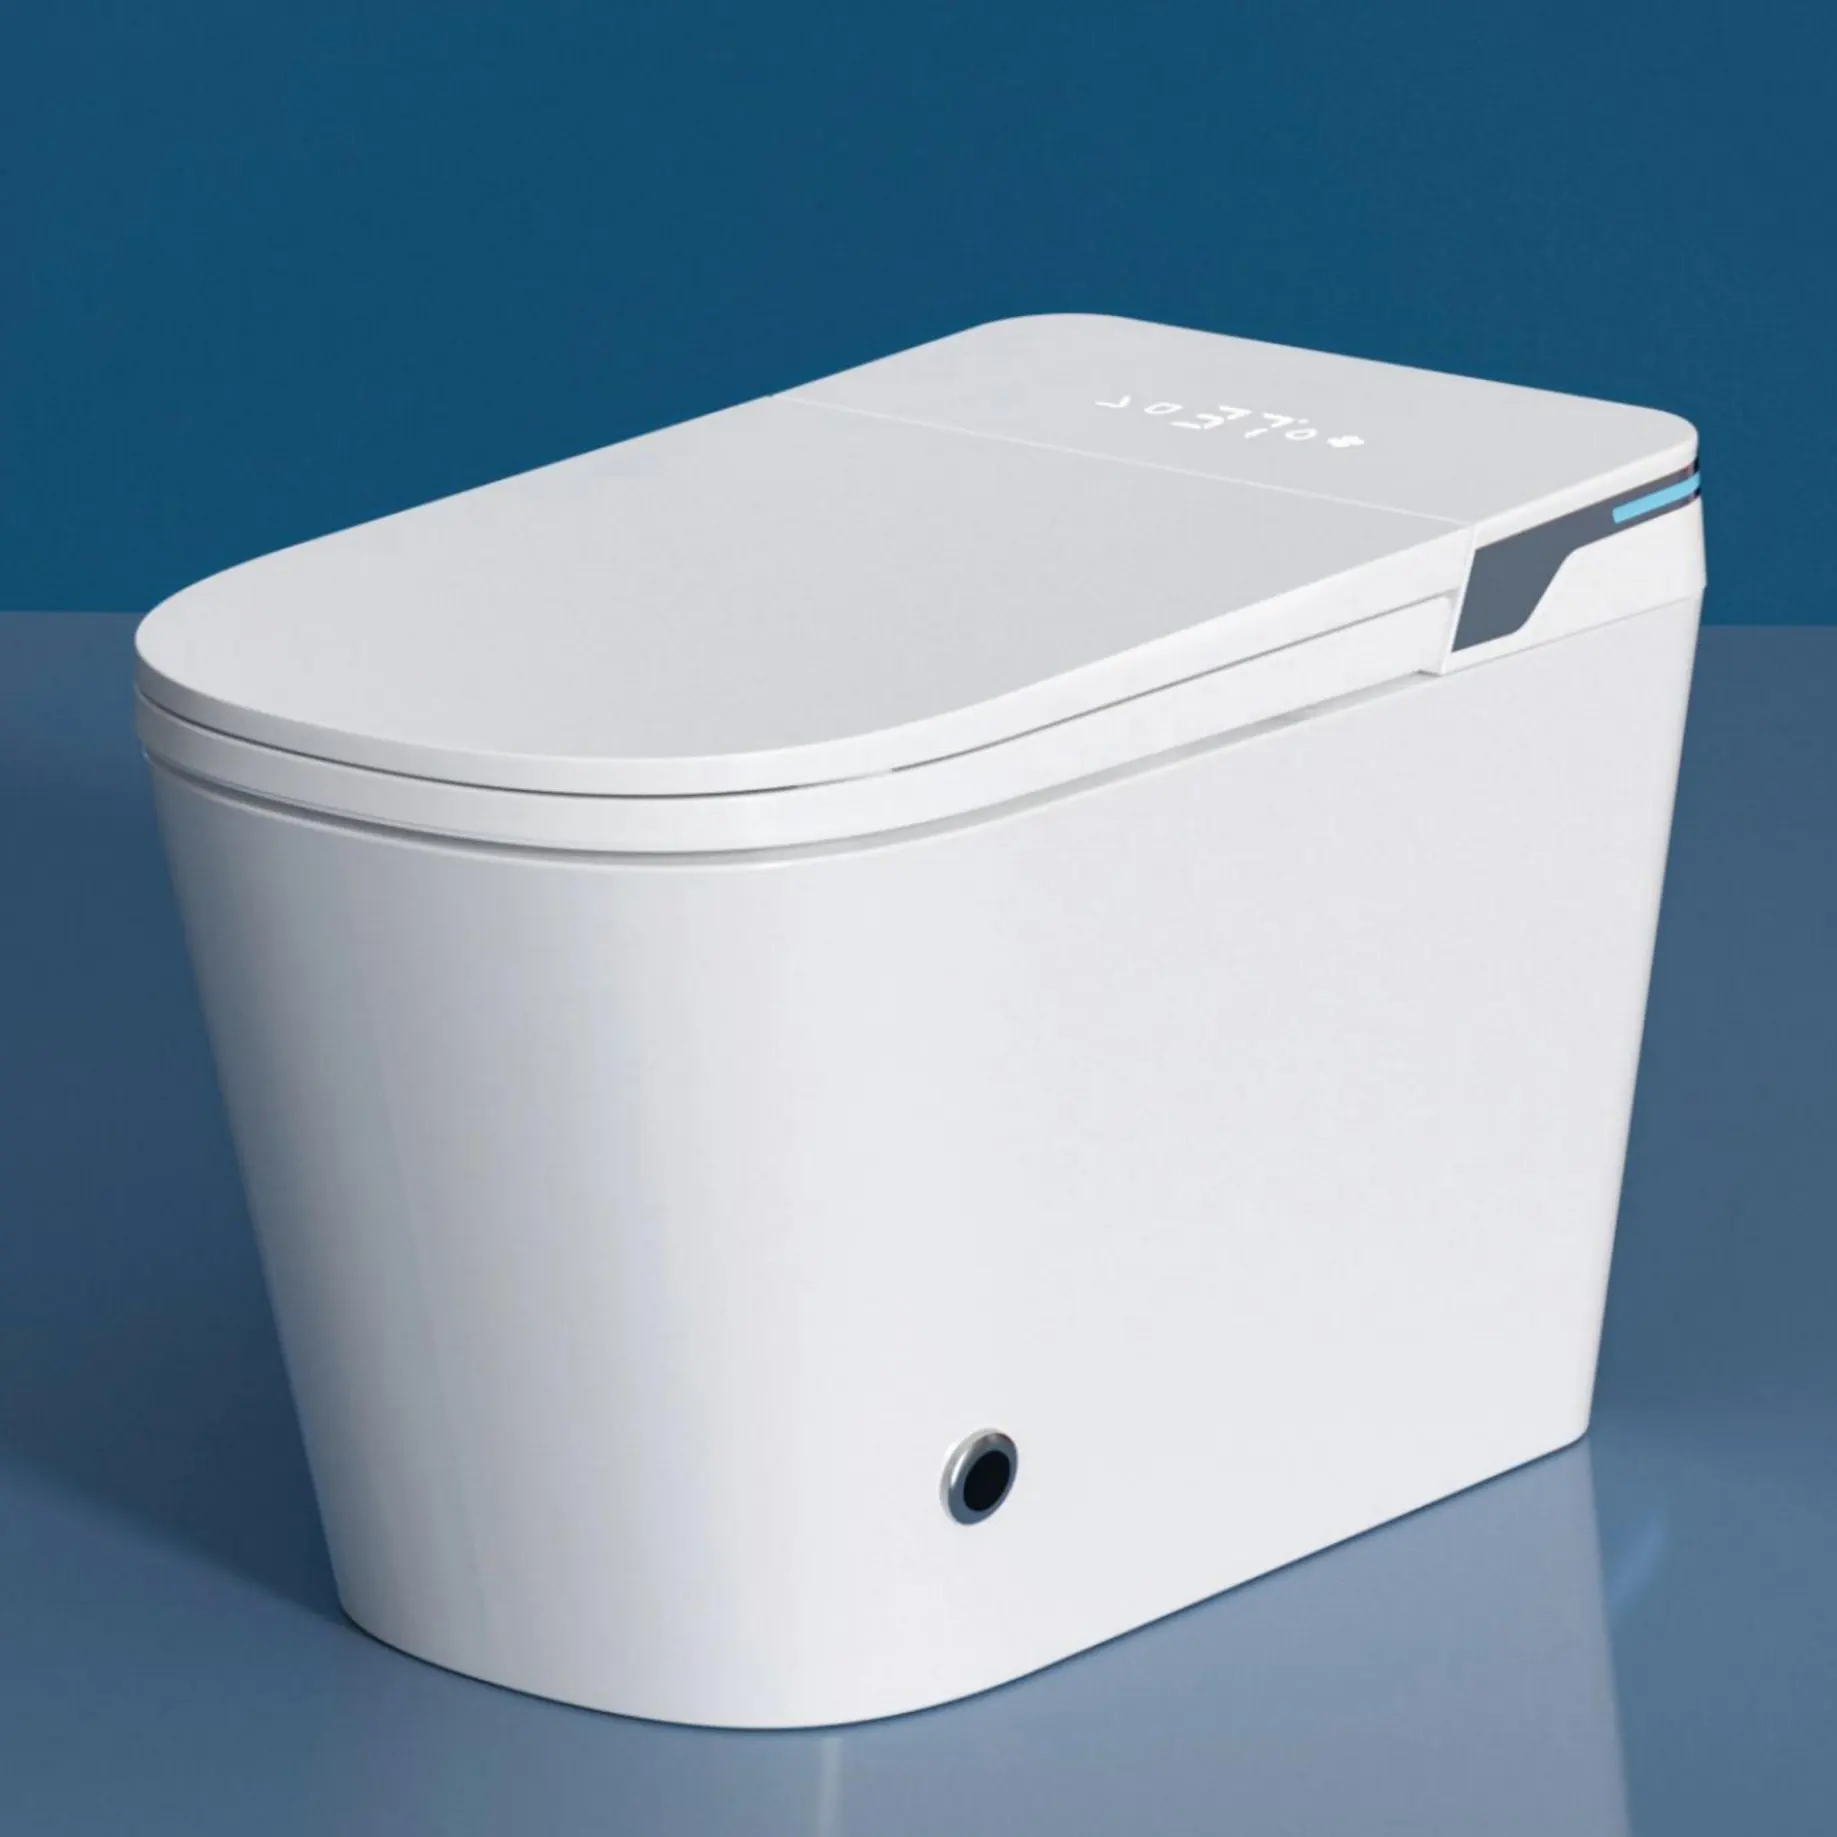 רחב מושב אוטומטי פתוח מודרני closestool שידת טואלט אמבטיה חשמלי בב"ש מלא אוטומטית אינטליגנטי חכם אסלה